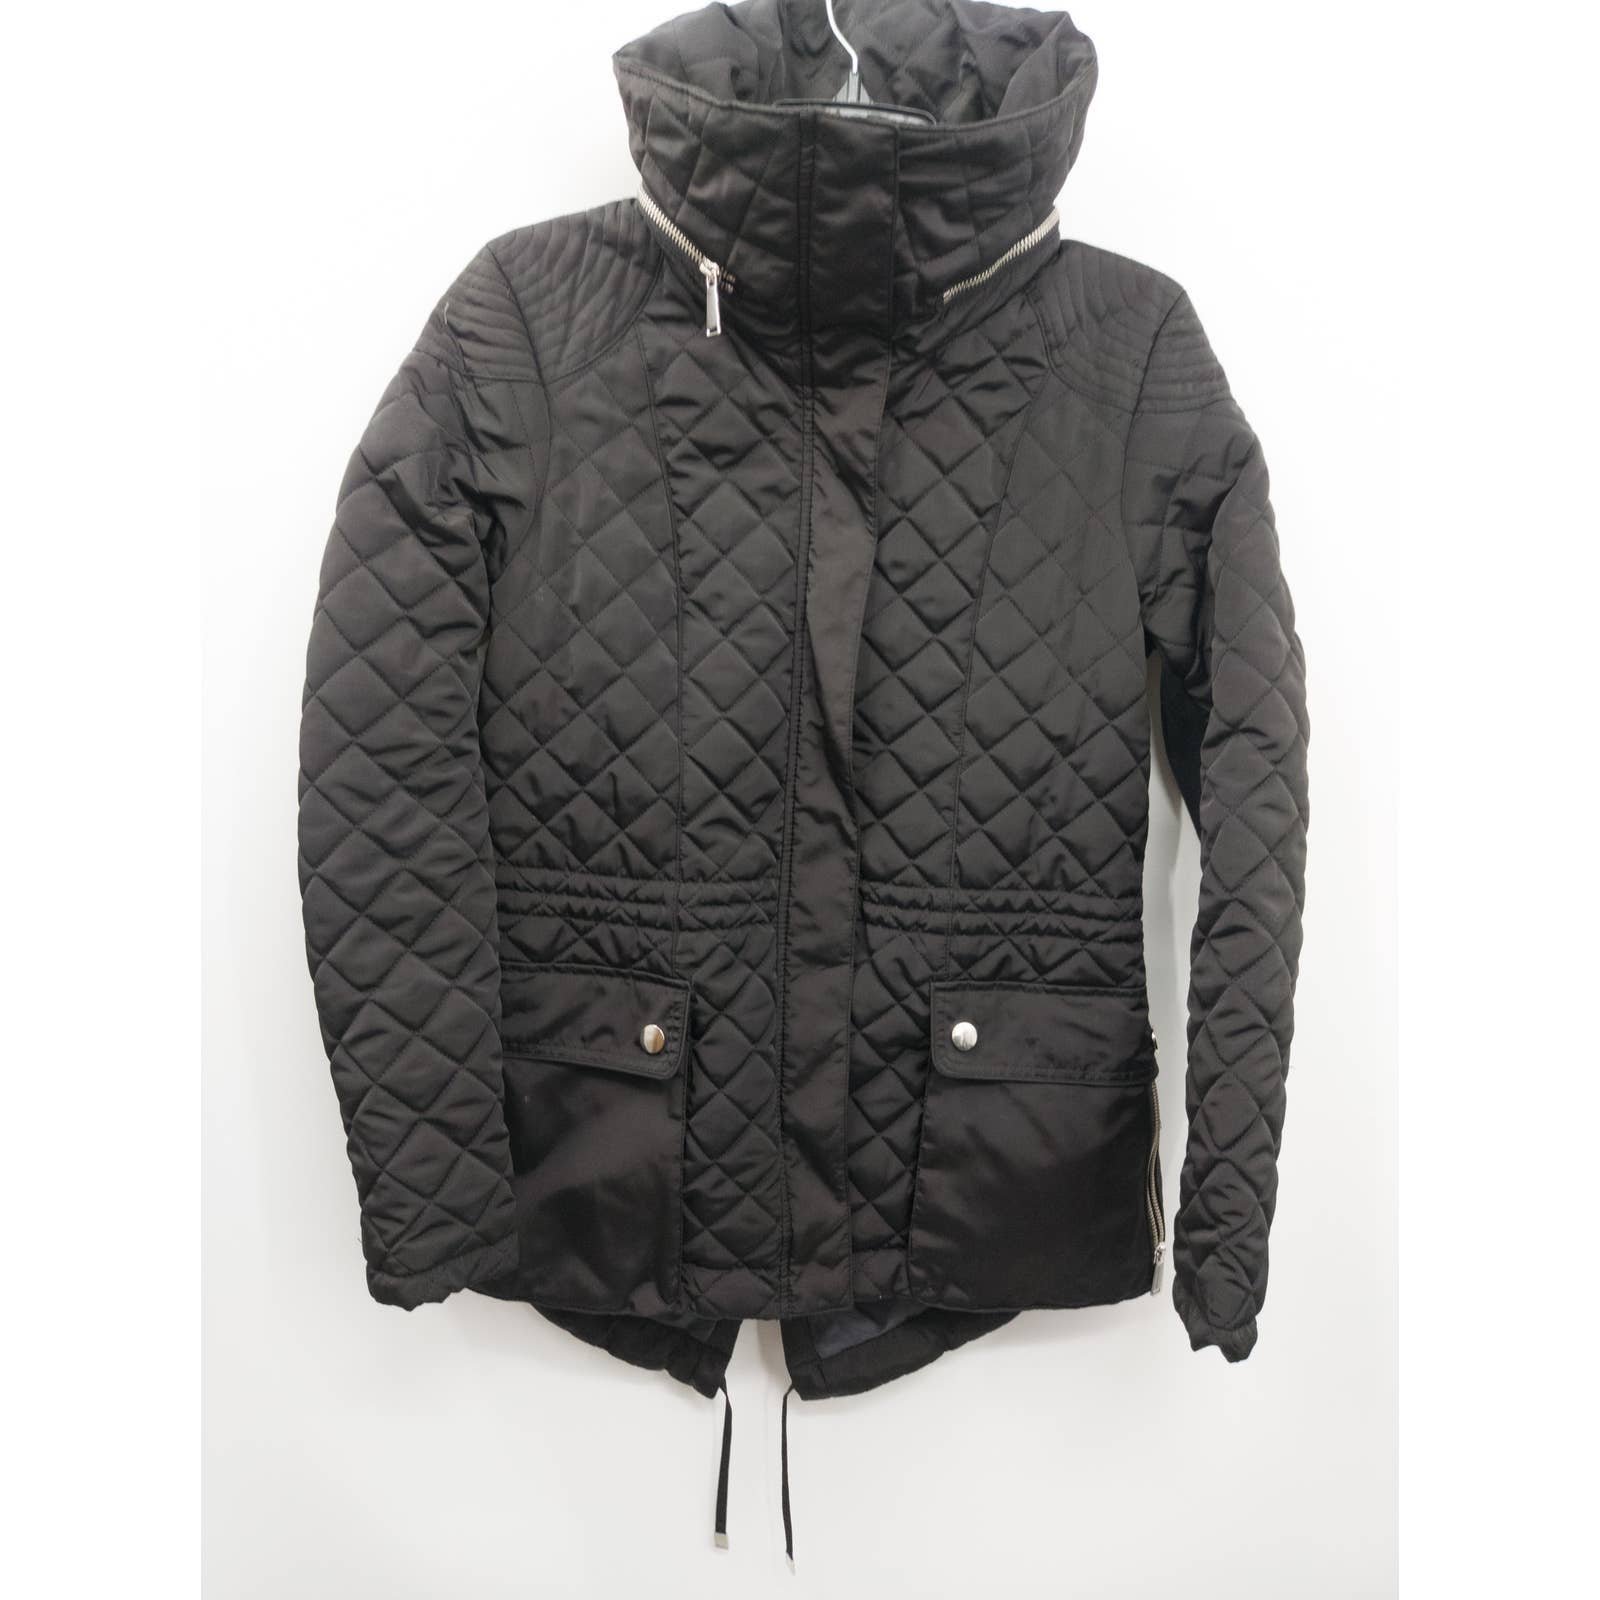 Saks Fifth Avenue Women´s Black Quilted Winter Coat Medium LvnUlY83n